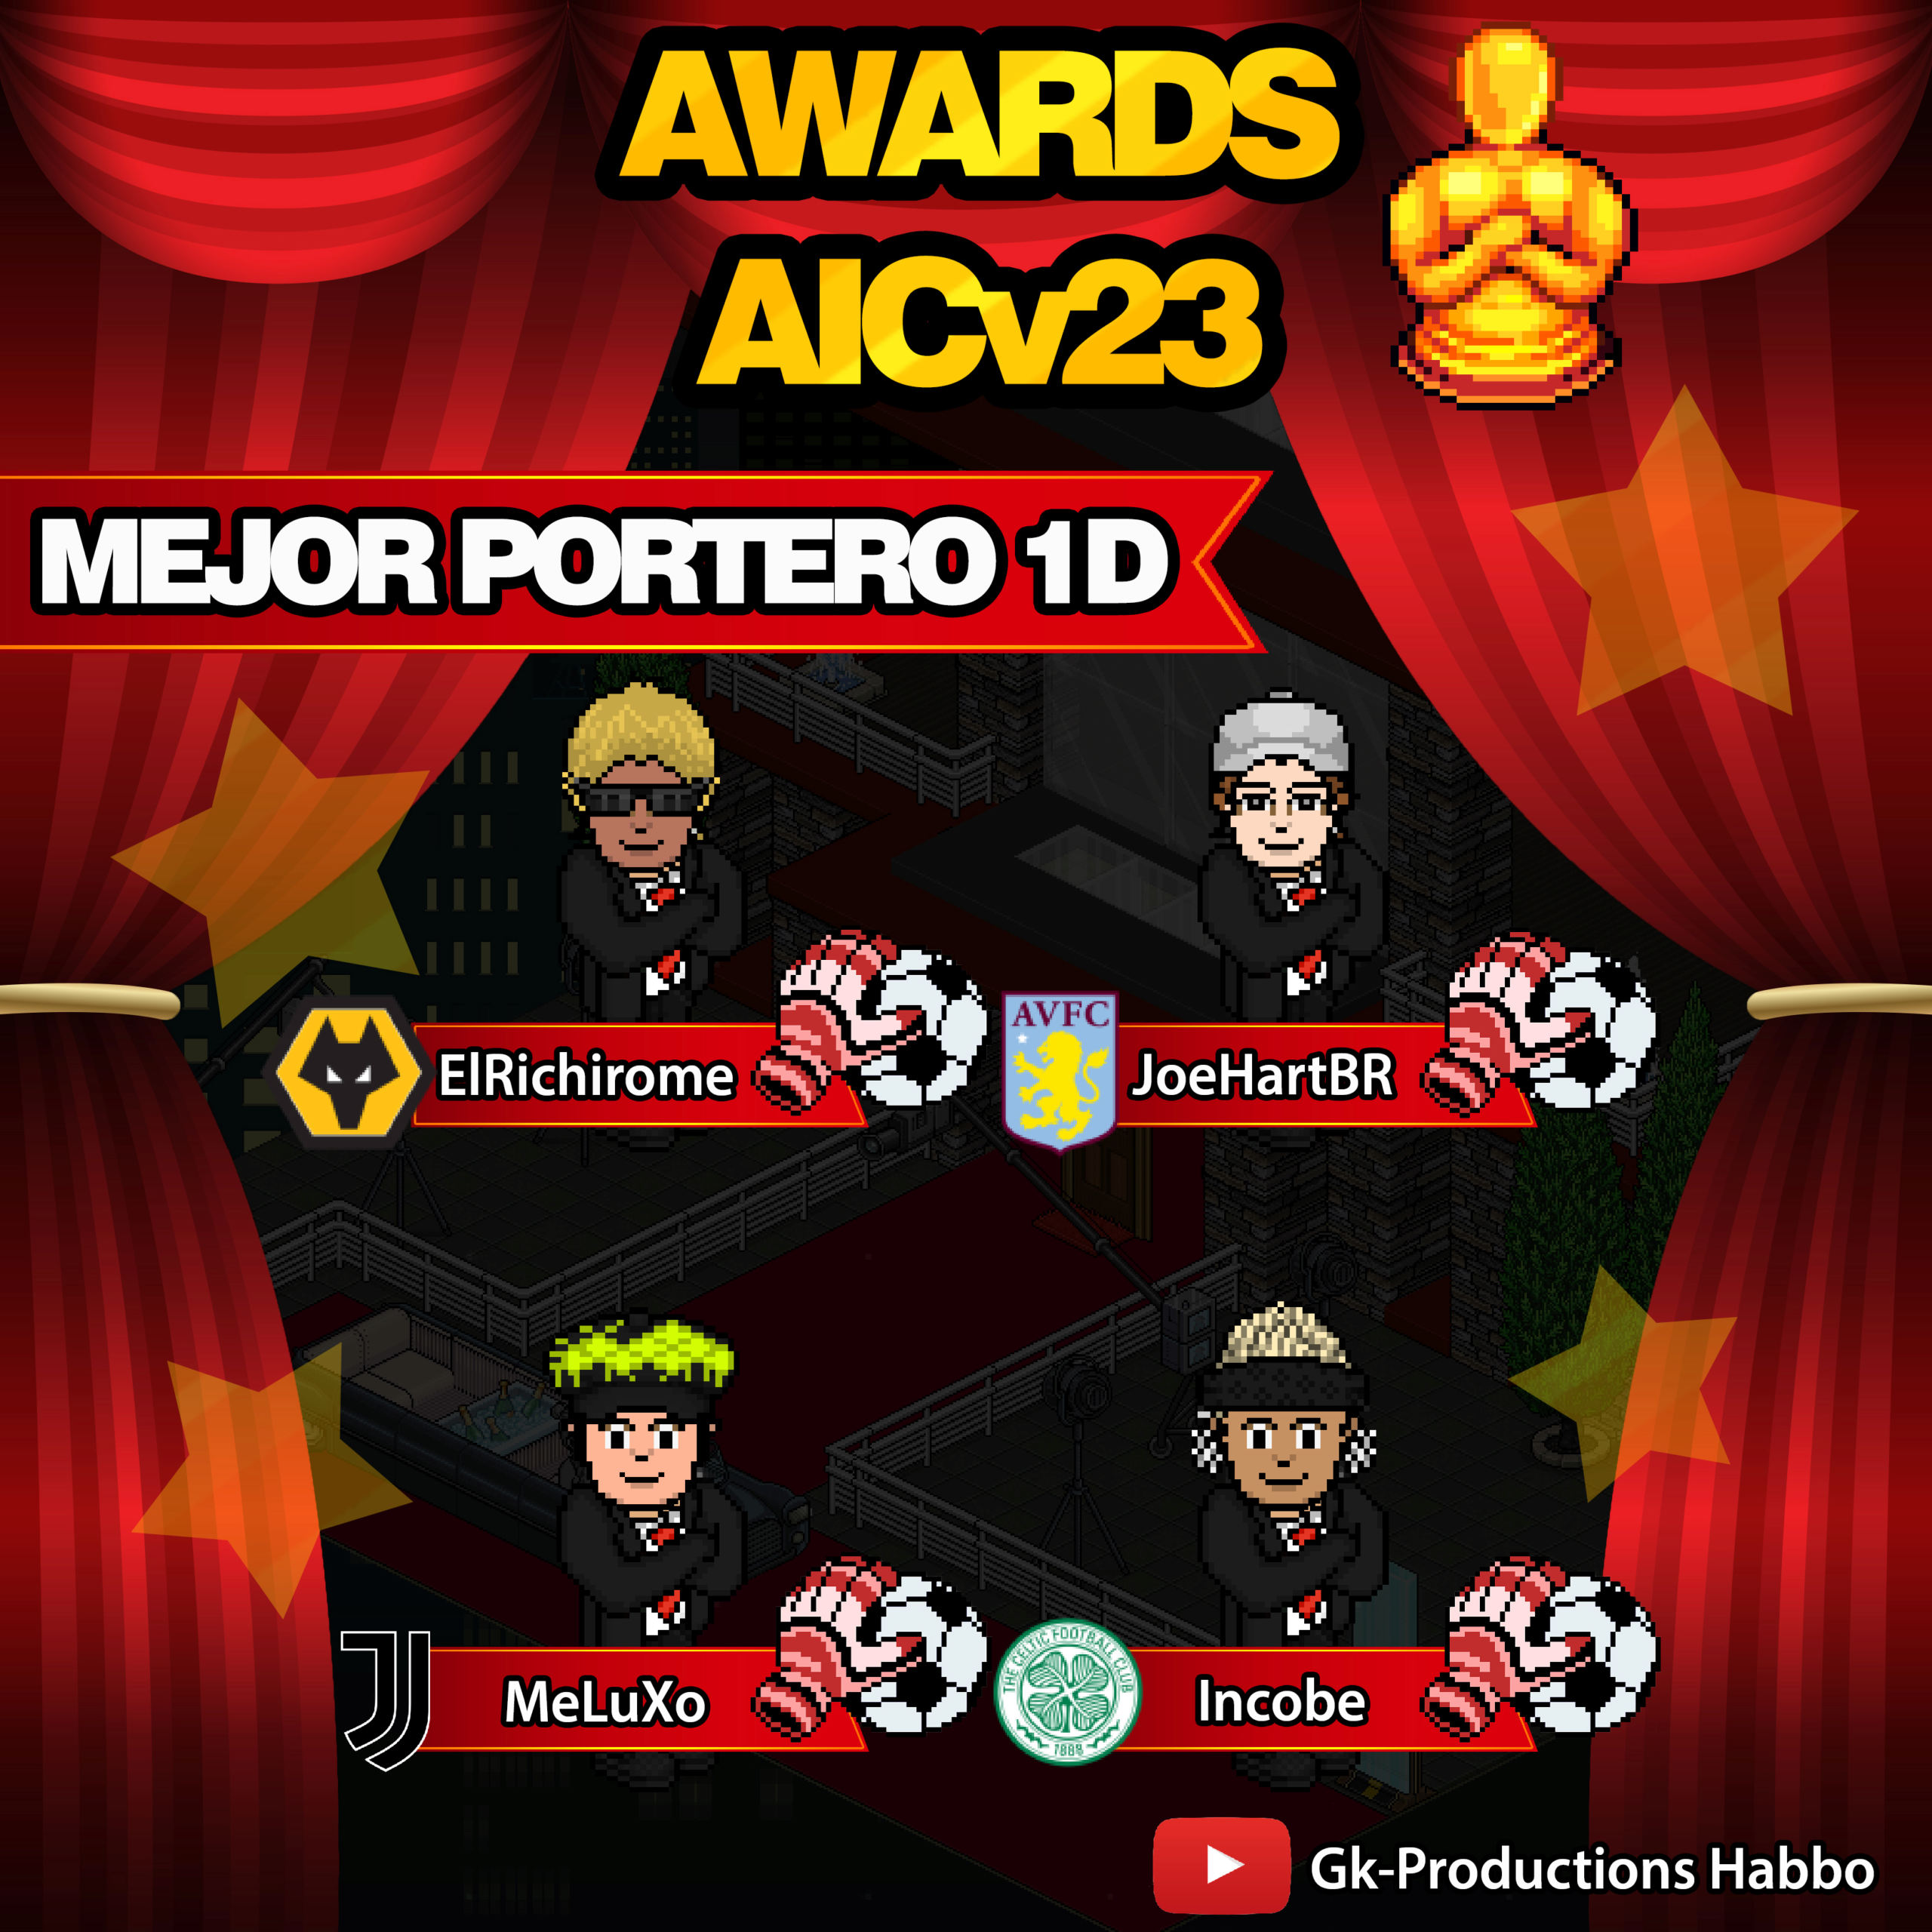 AWARDS AICv23 - Nominados Porter10